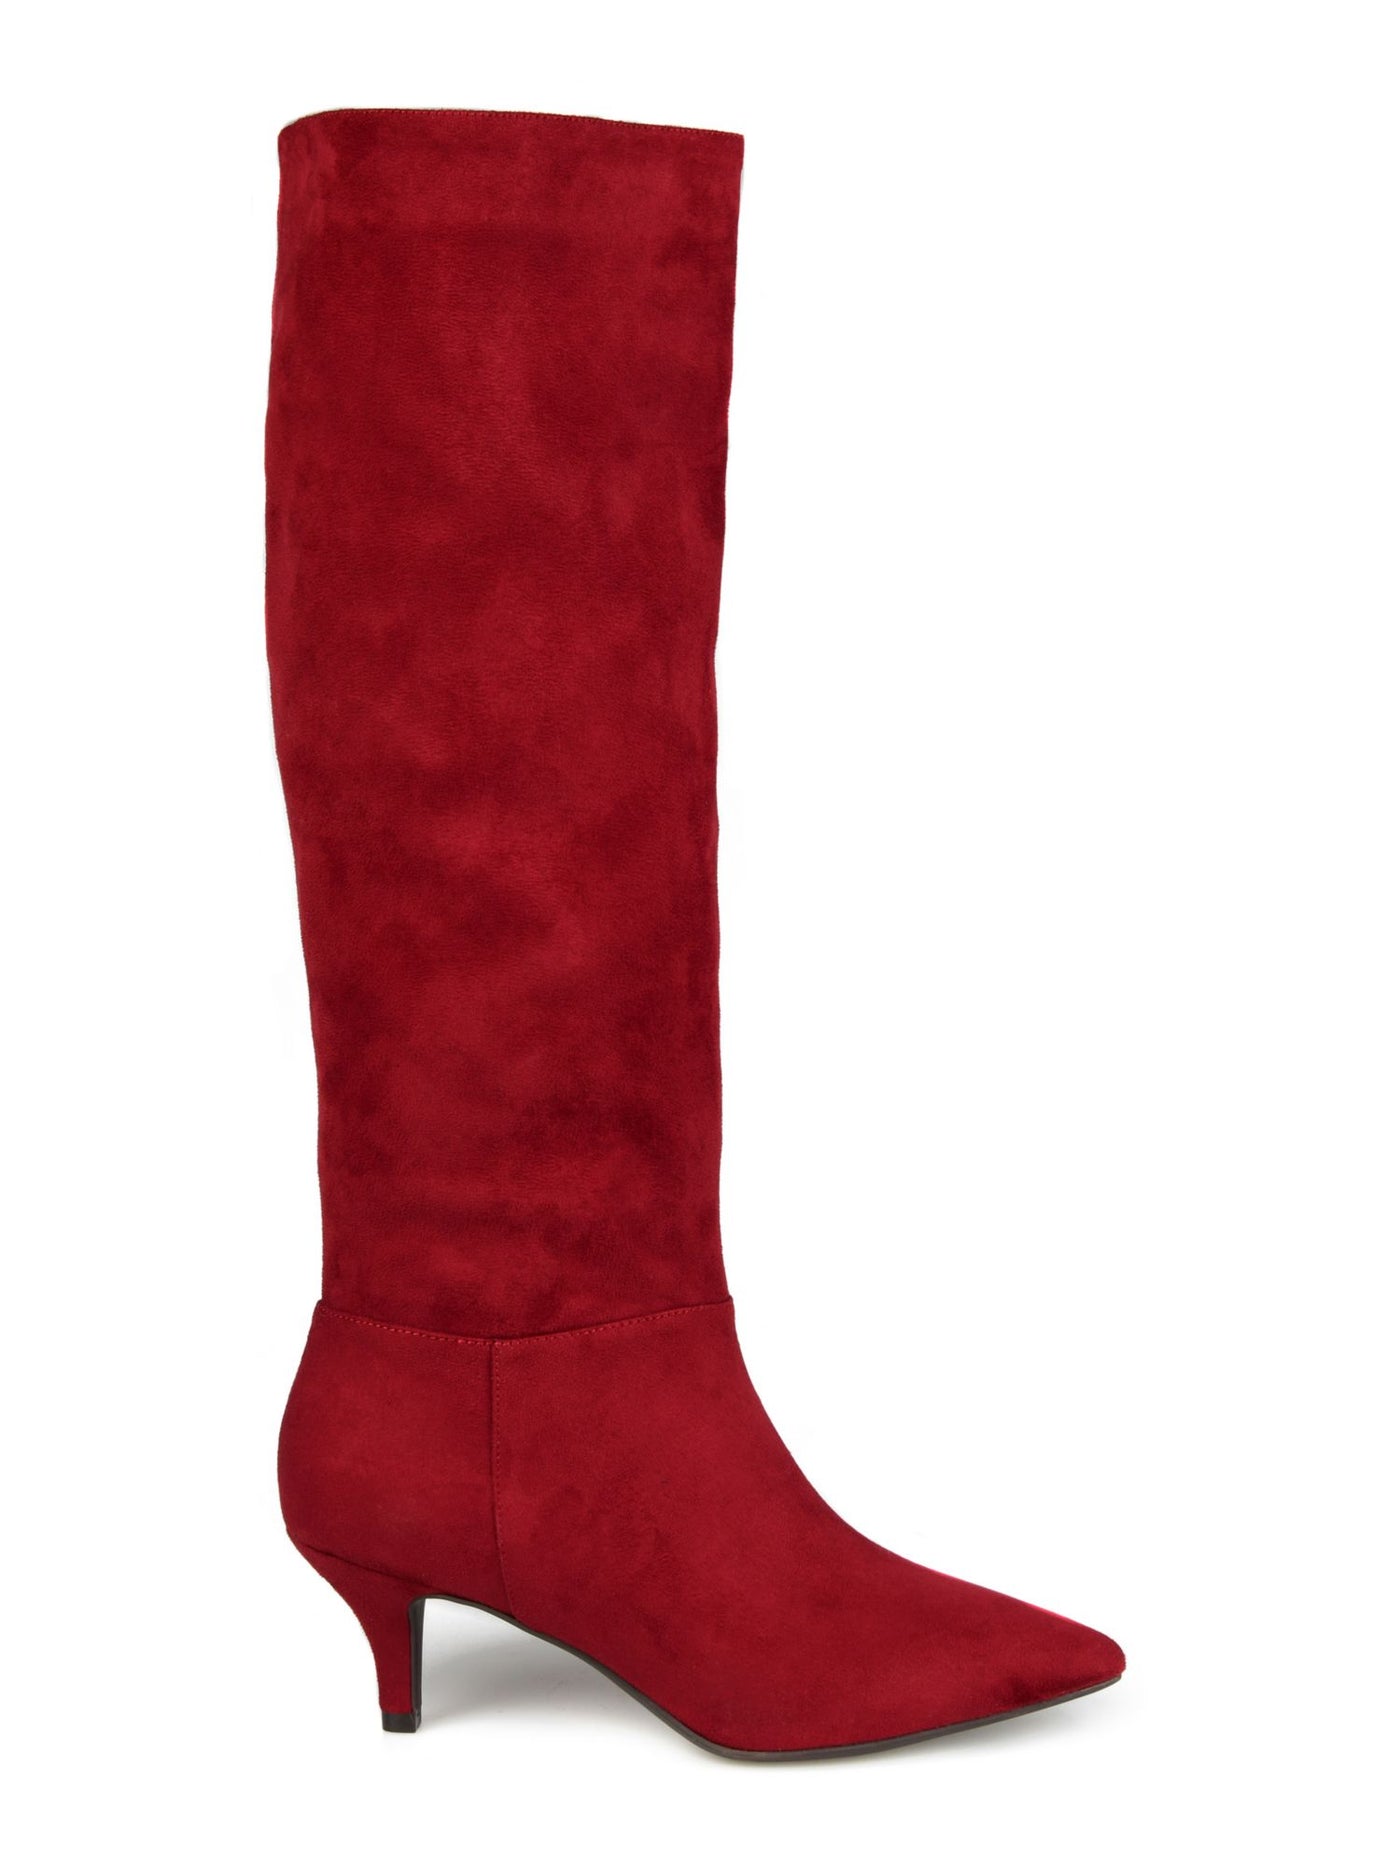 JOURNEE COLLECTION Womens Maroon Comfort Vellia Pointed Toe Kitten Heel Slip On Dress Boots 12 M